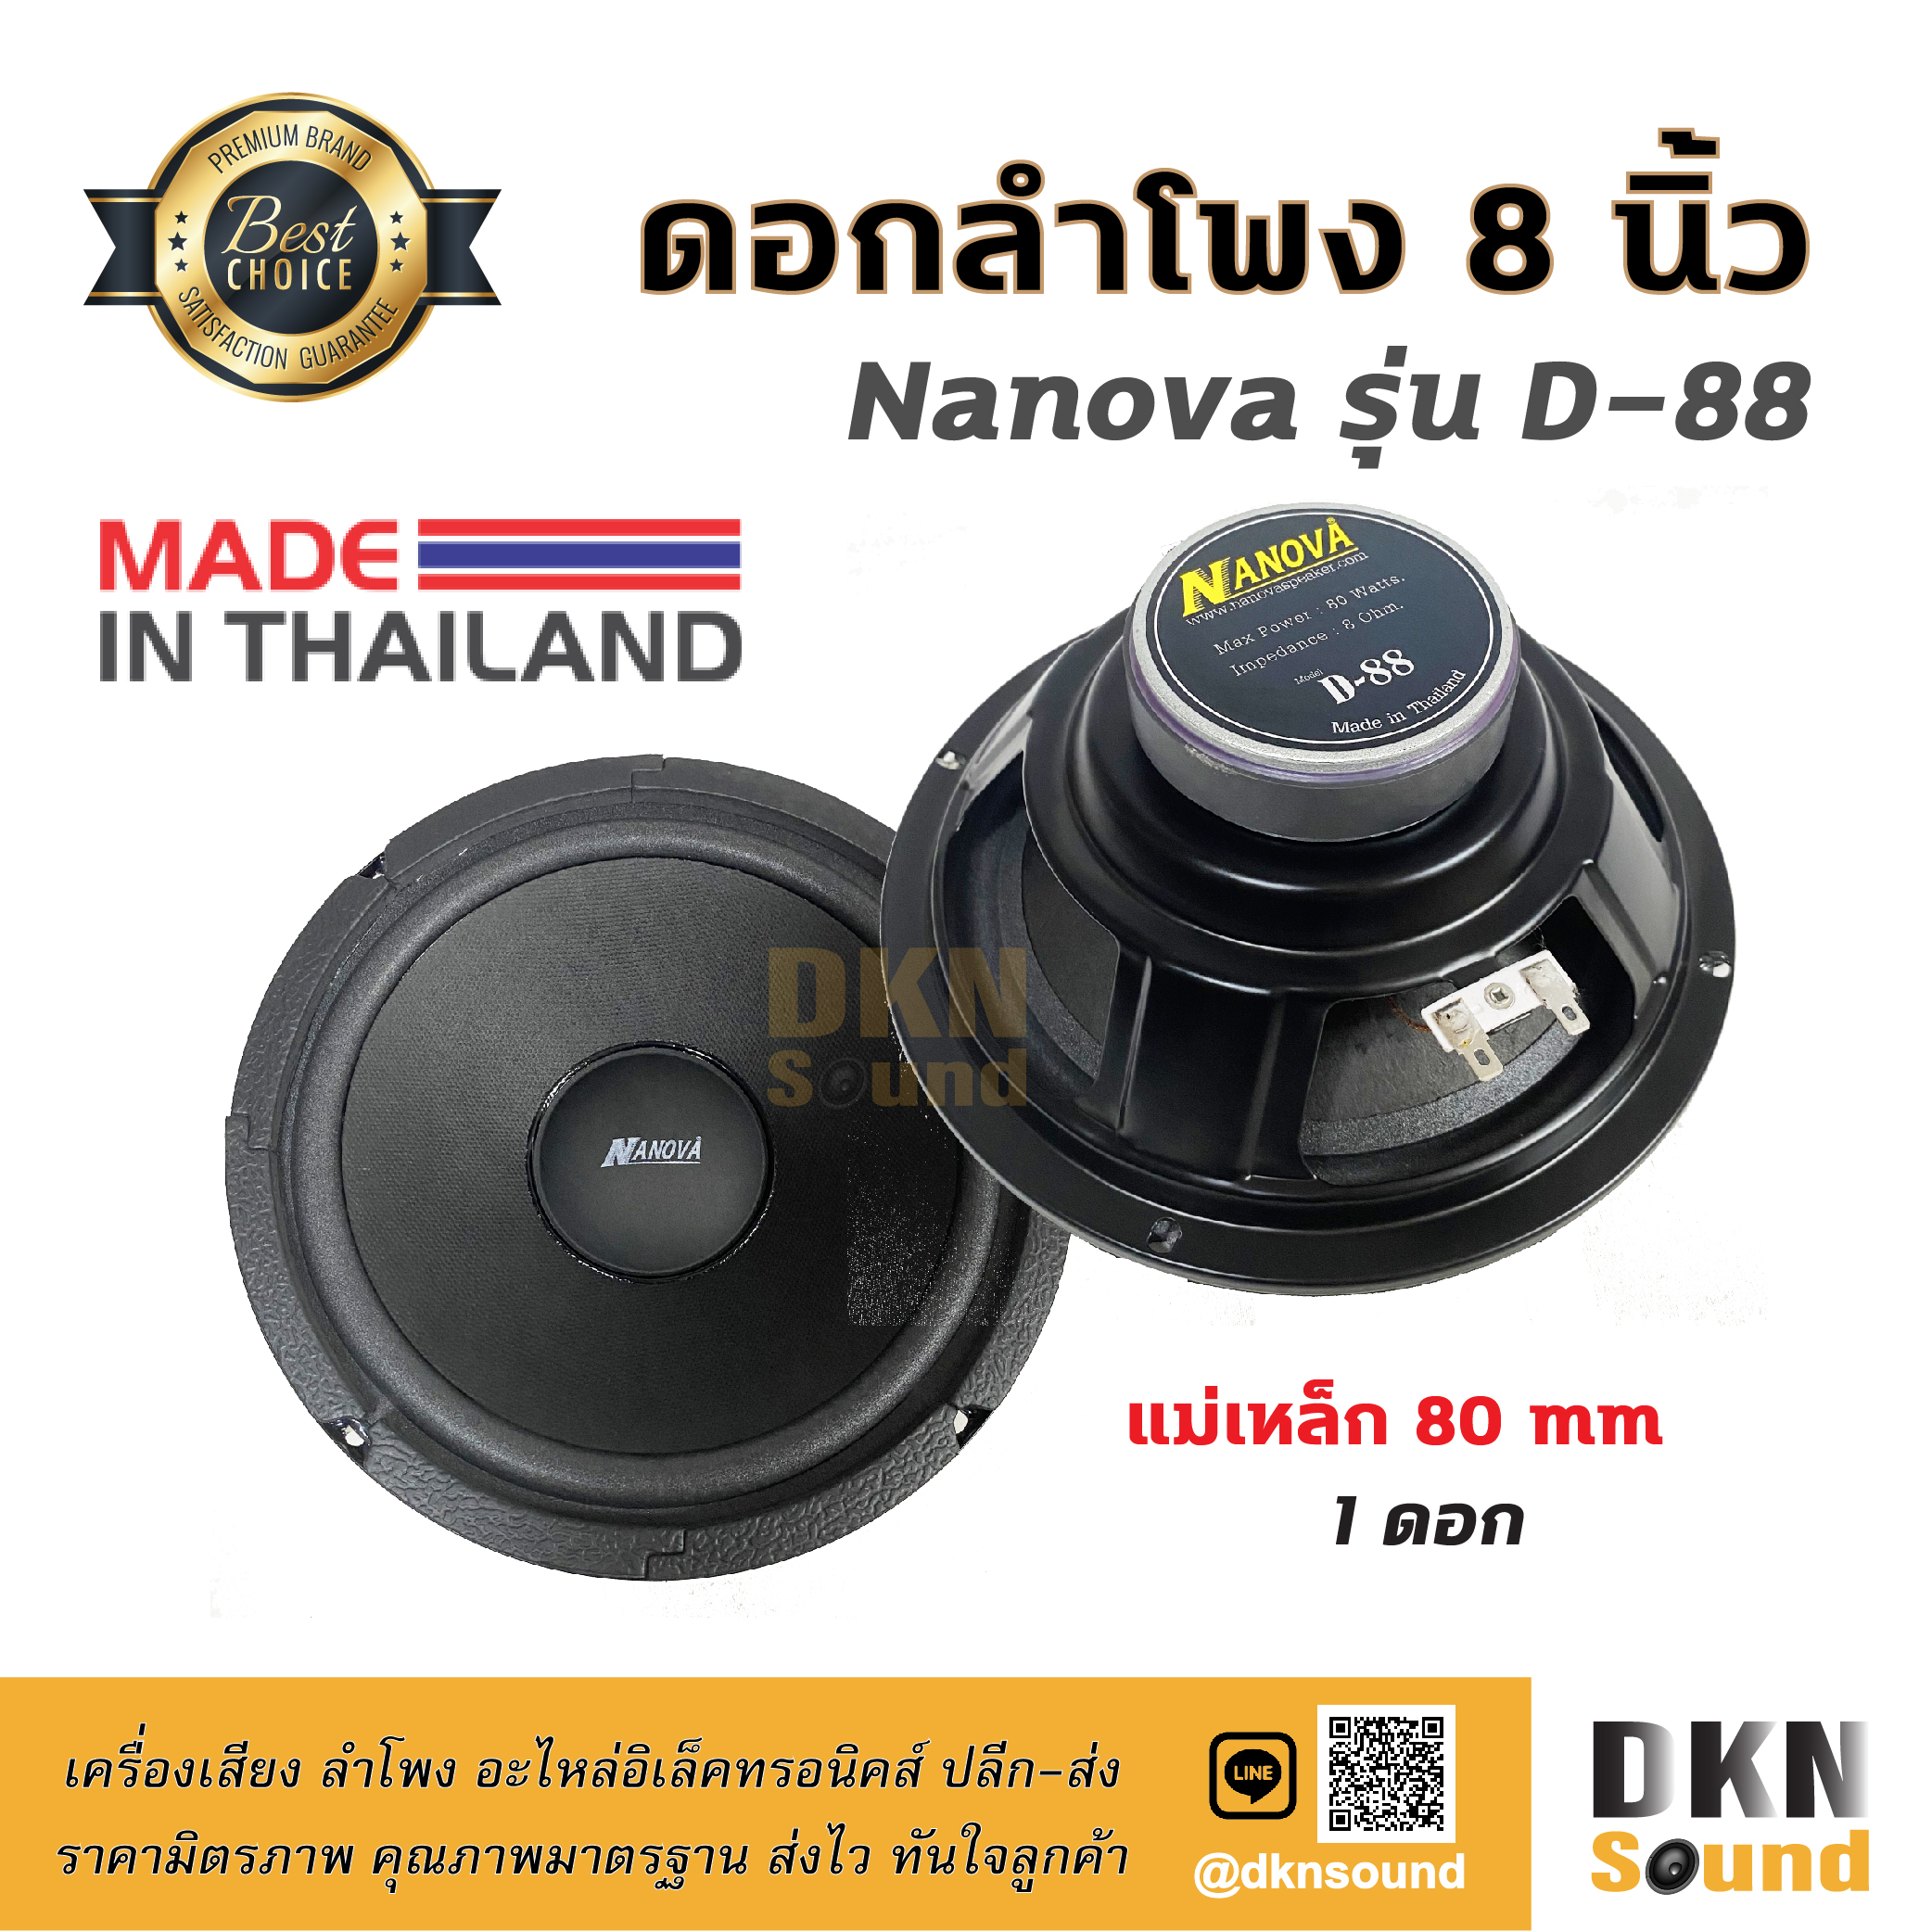 เสียงดีมาก! ดอกลำโพงกลางเบส ขอบโฟม ขนาด 8” Nanova รุ่น D-88 แม่เหล็ก 80 มิล 80 W แท้ (1 ดอก) Made in Thailand ? DKN Sound ? ดอกลำโพง ลำโพง